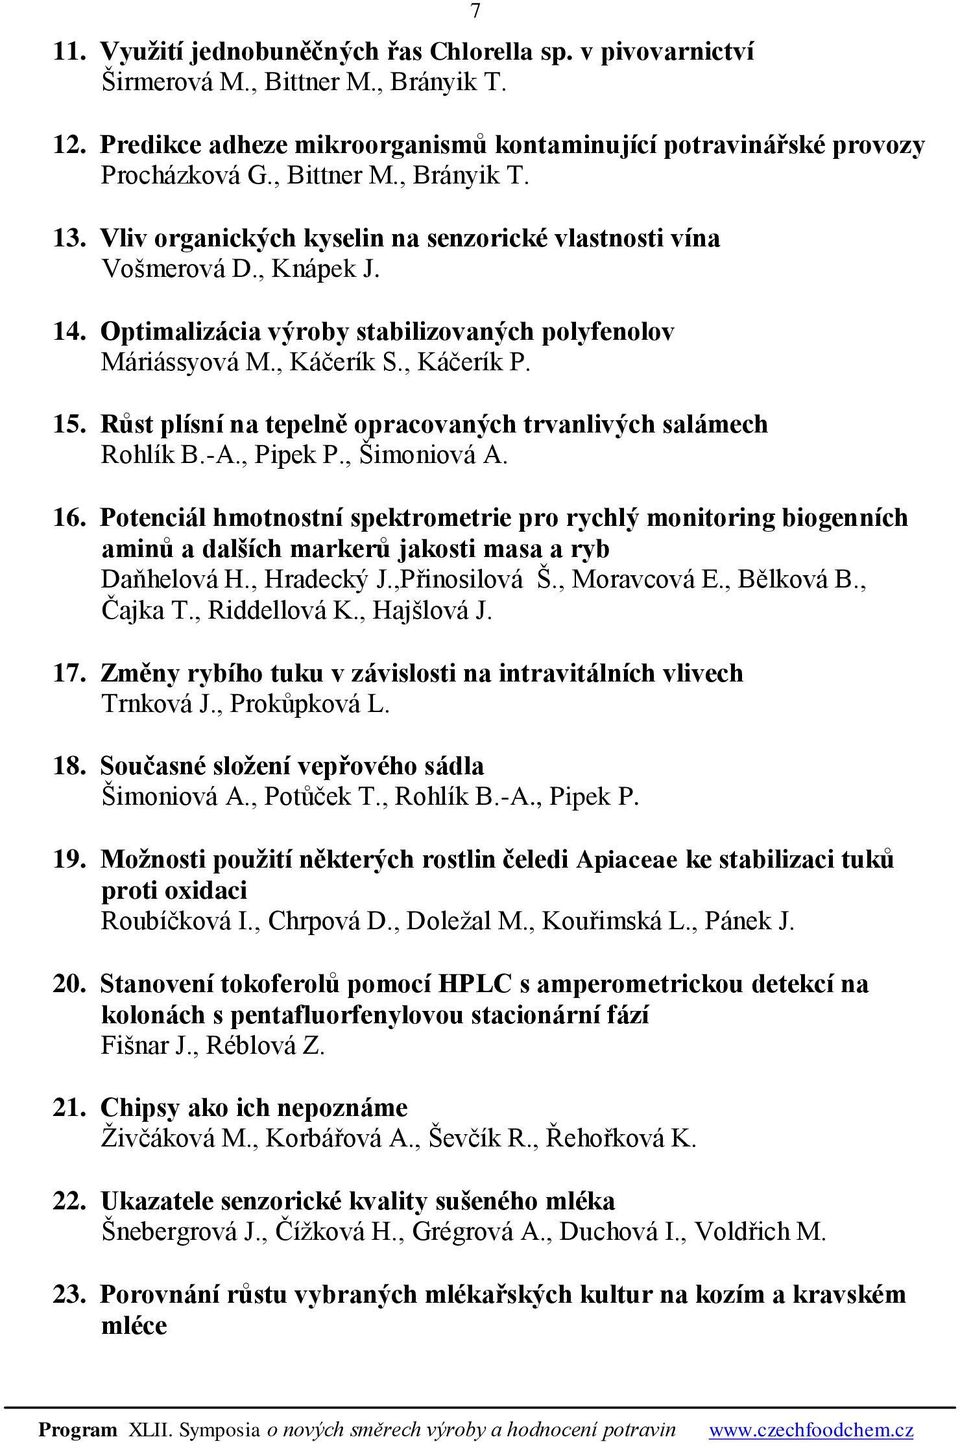 Růst plísní na tepelně opracovaných trvanlivých salámech Rohlík B.-A., Pipek P., Šimoniová A. 16.